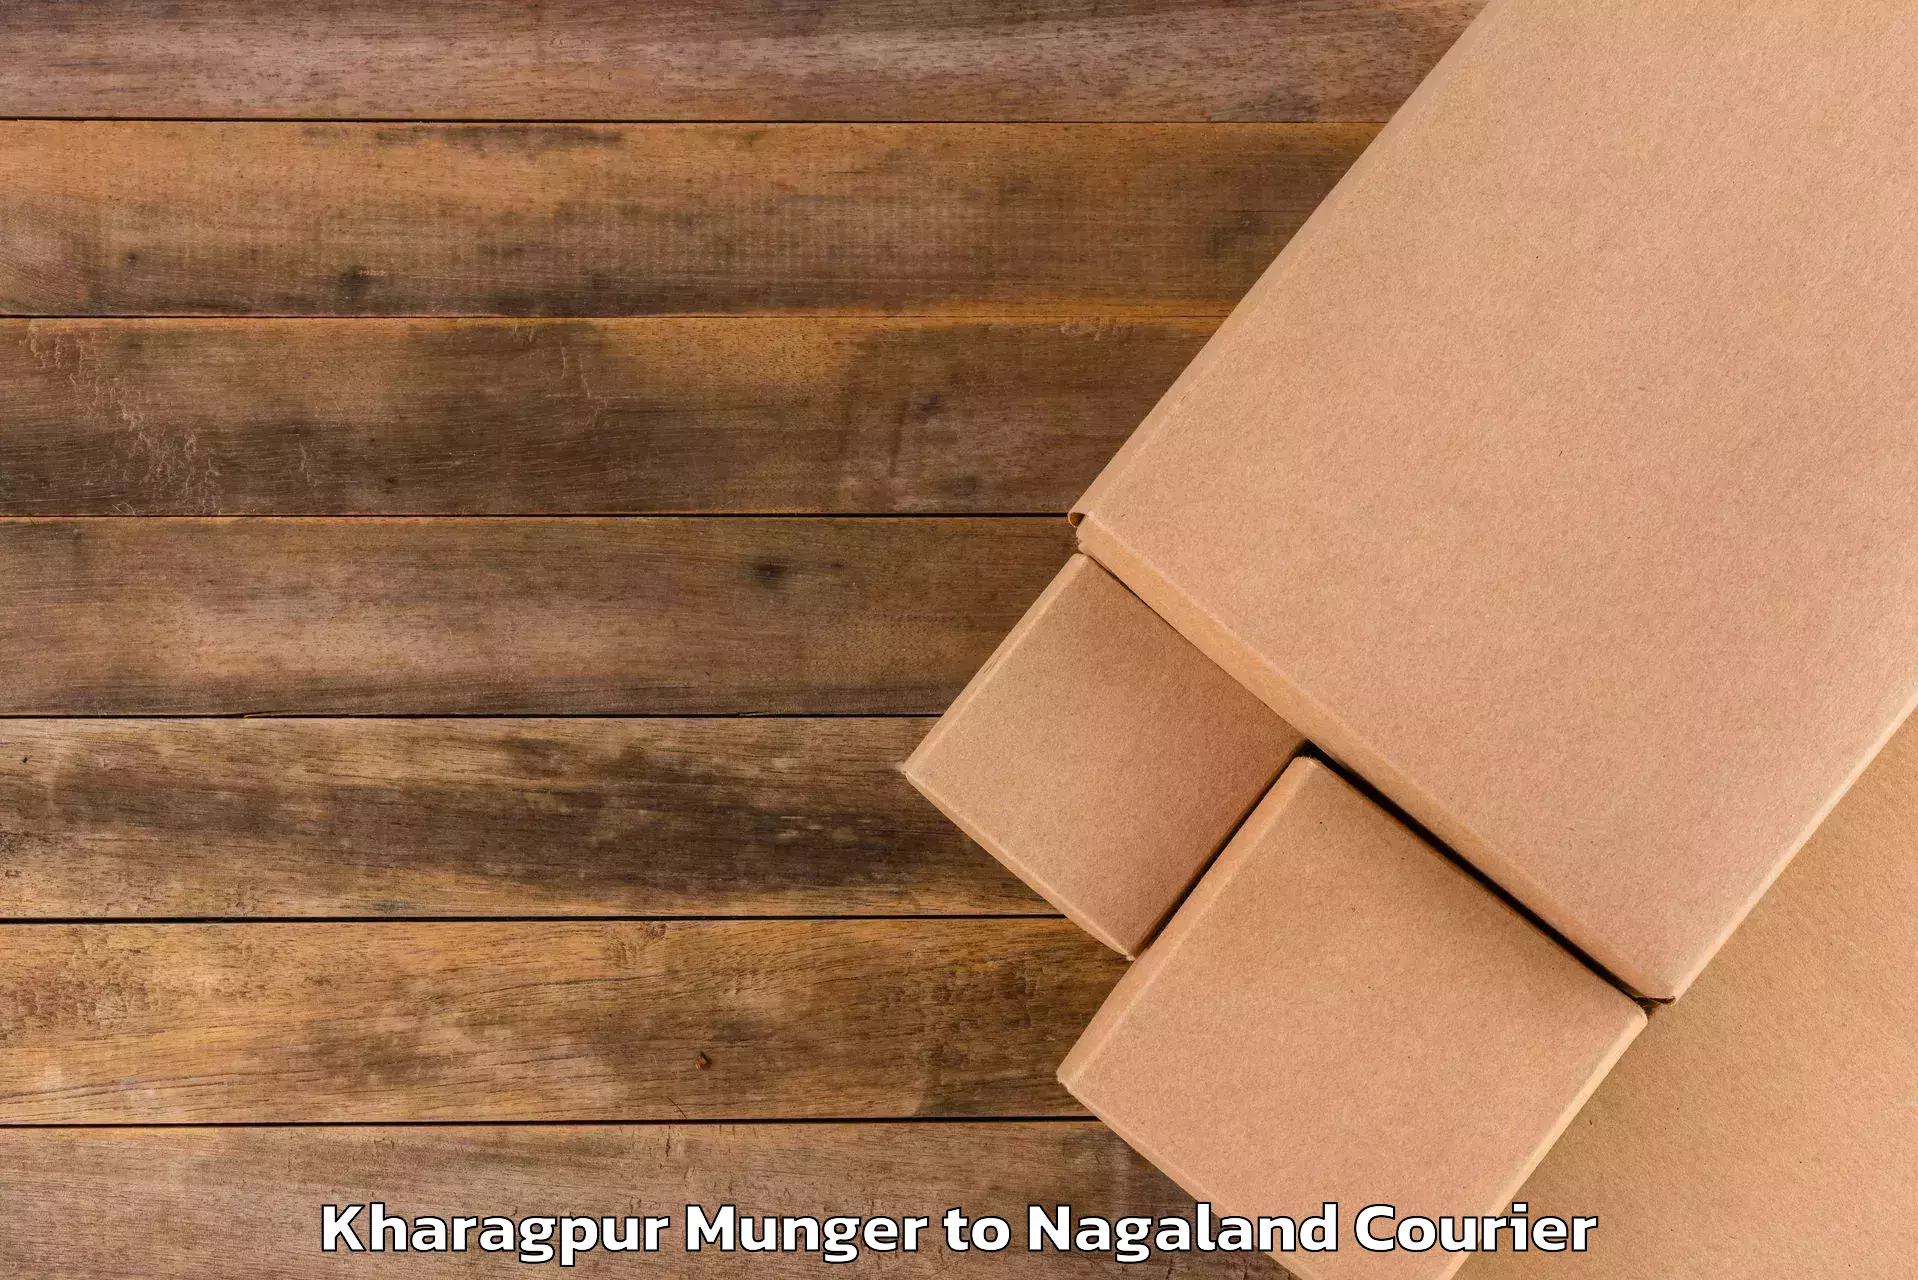 Baggage handling services Kharagpur Munger to Dimapur